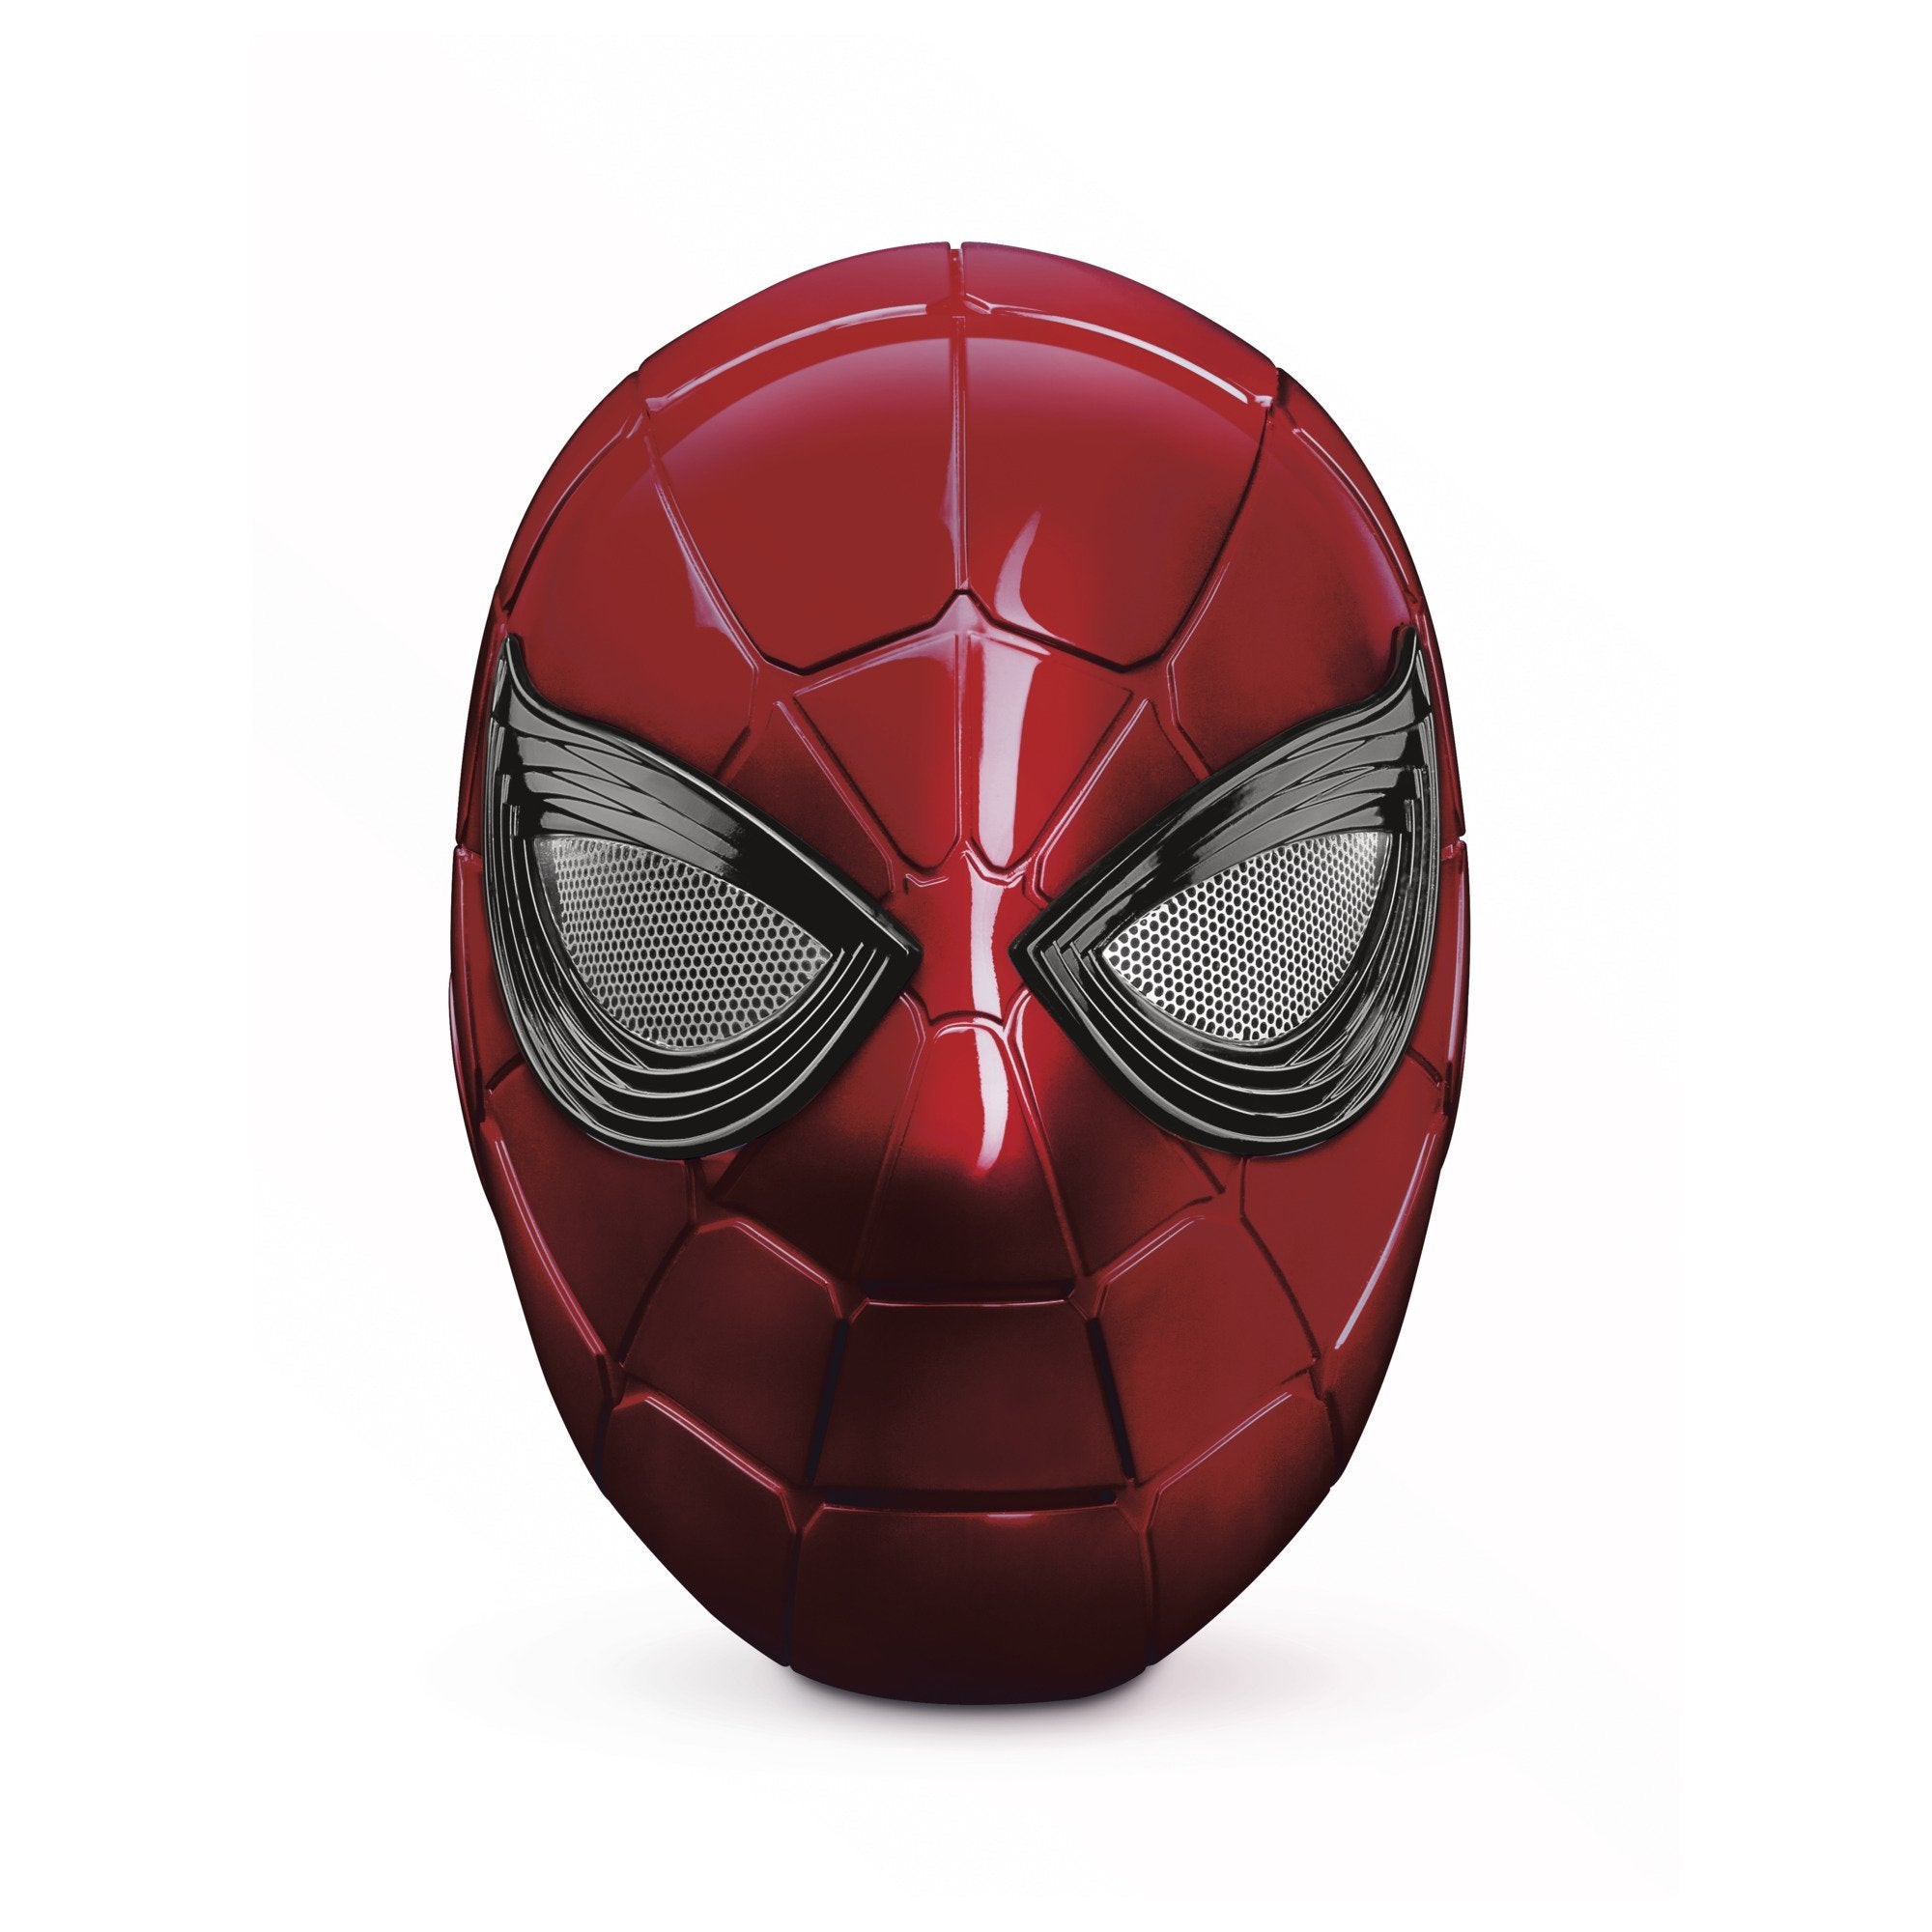 (IN STOCK) Marvel Legends - Avengers: Endgame - Iron Spider Electronic Helmet - Marvelous Toys